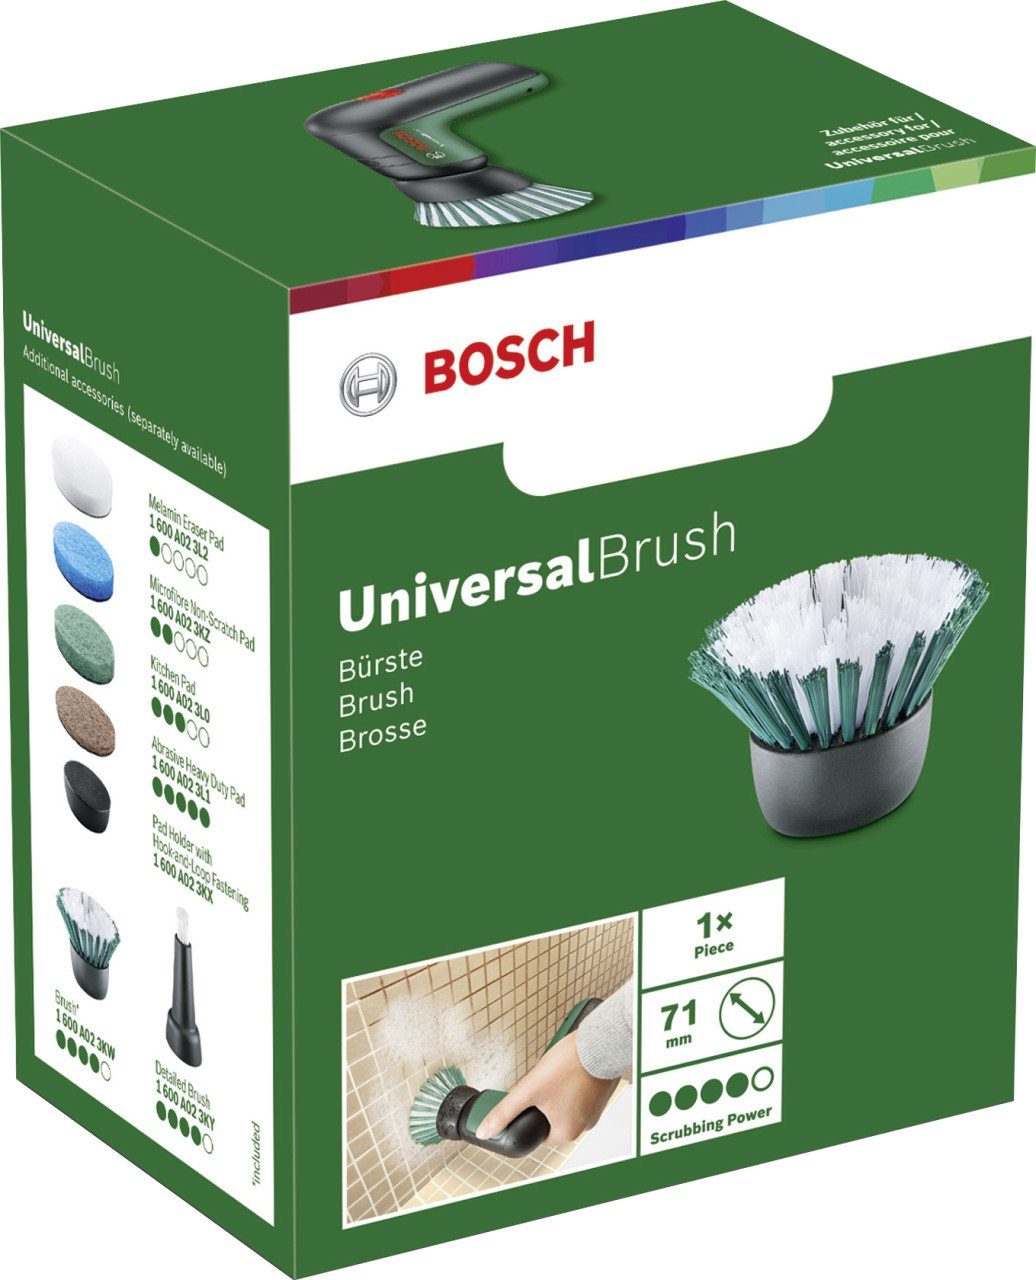 BOSCH Borstenbürste für Drahtbürste UniversalBrush Bosch